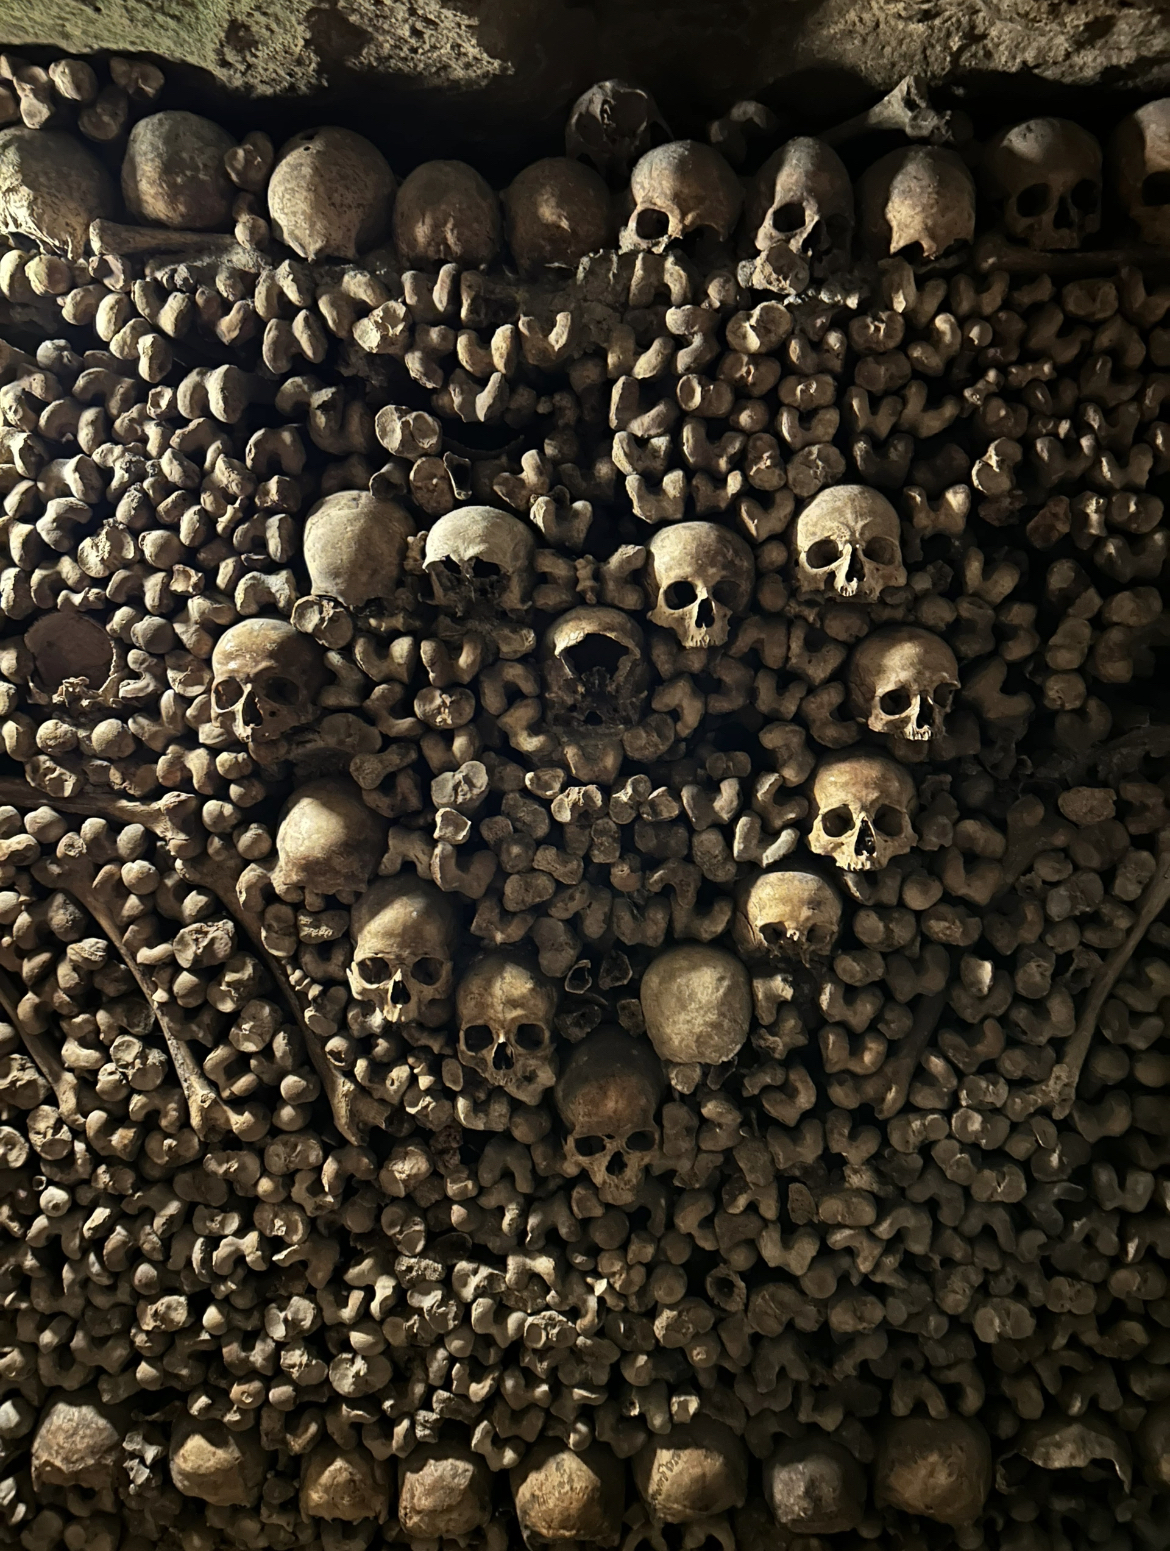 巴黎地下墓穴